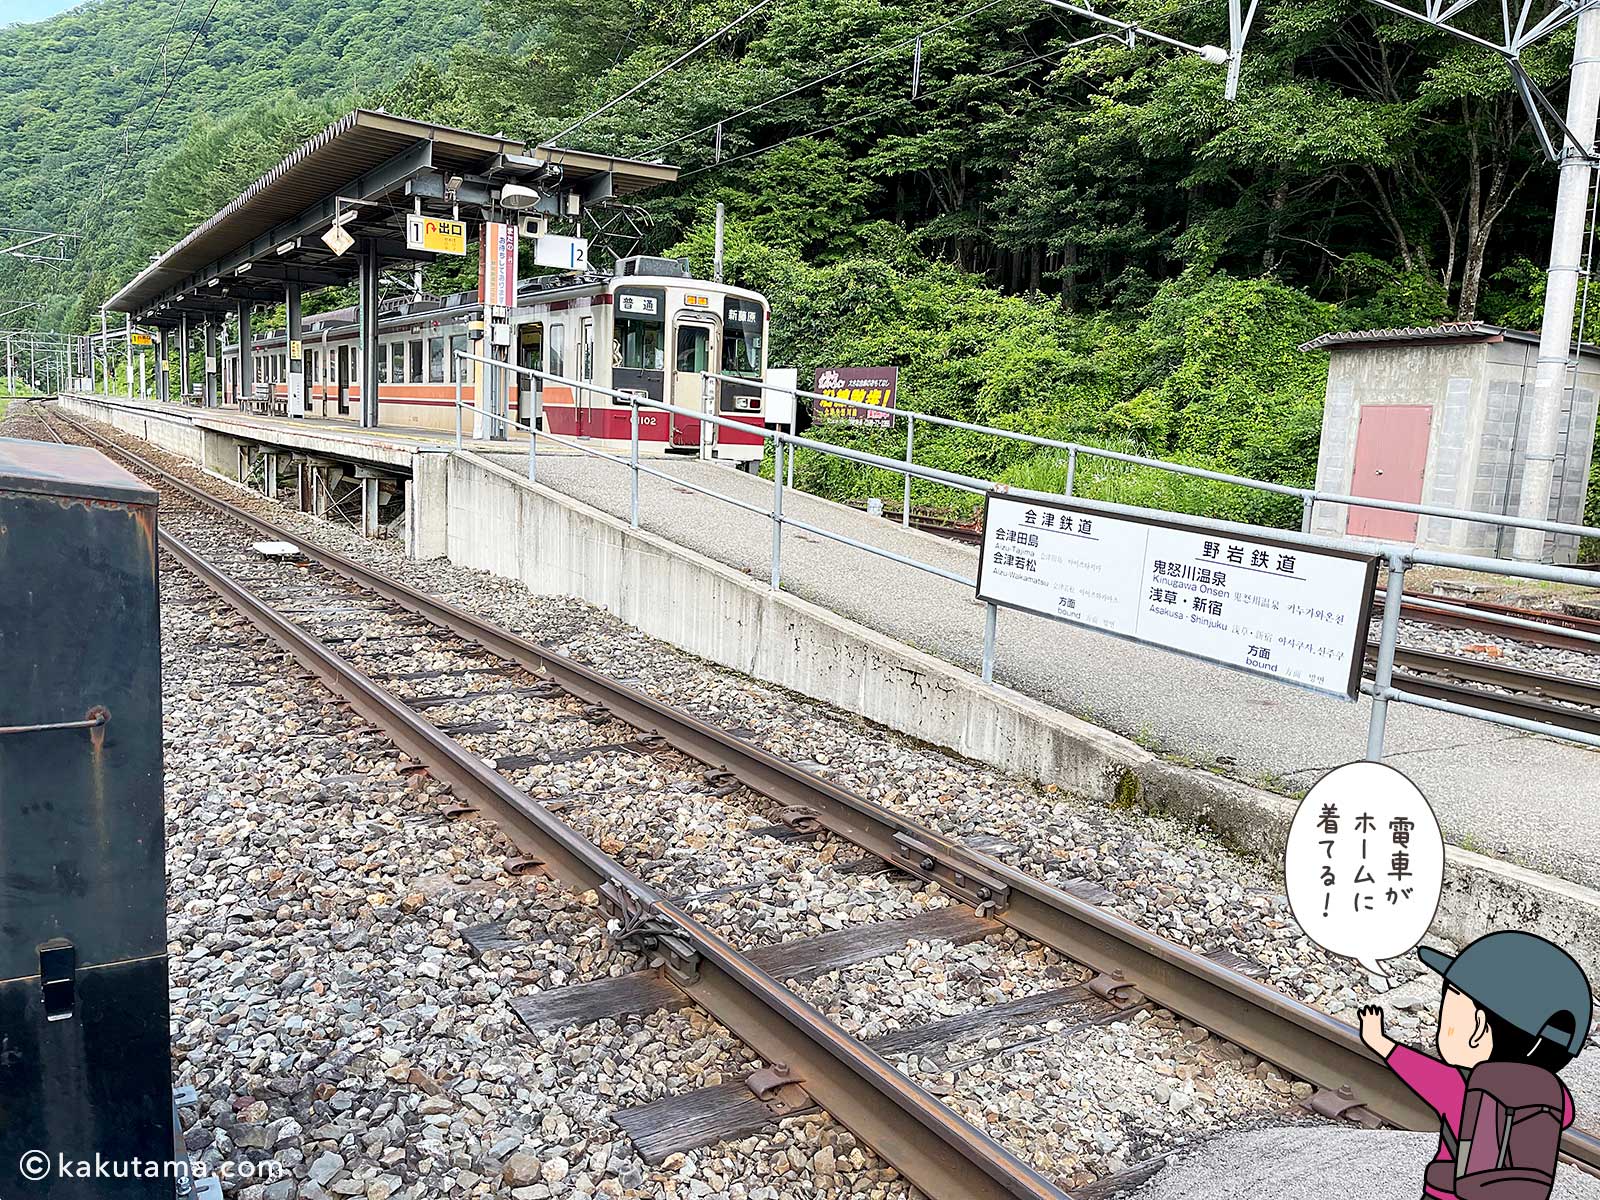 会津高原尾瀬口駅の電車写真と登山者のイラスト